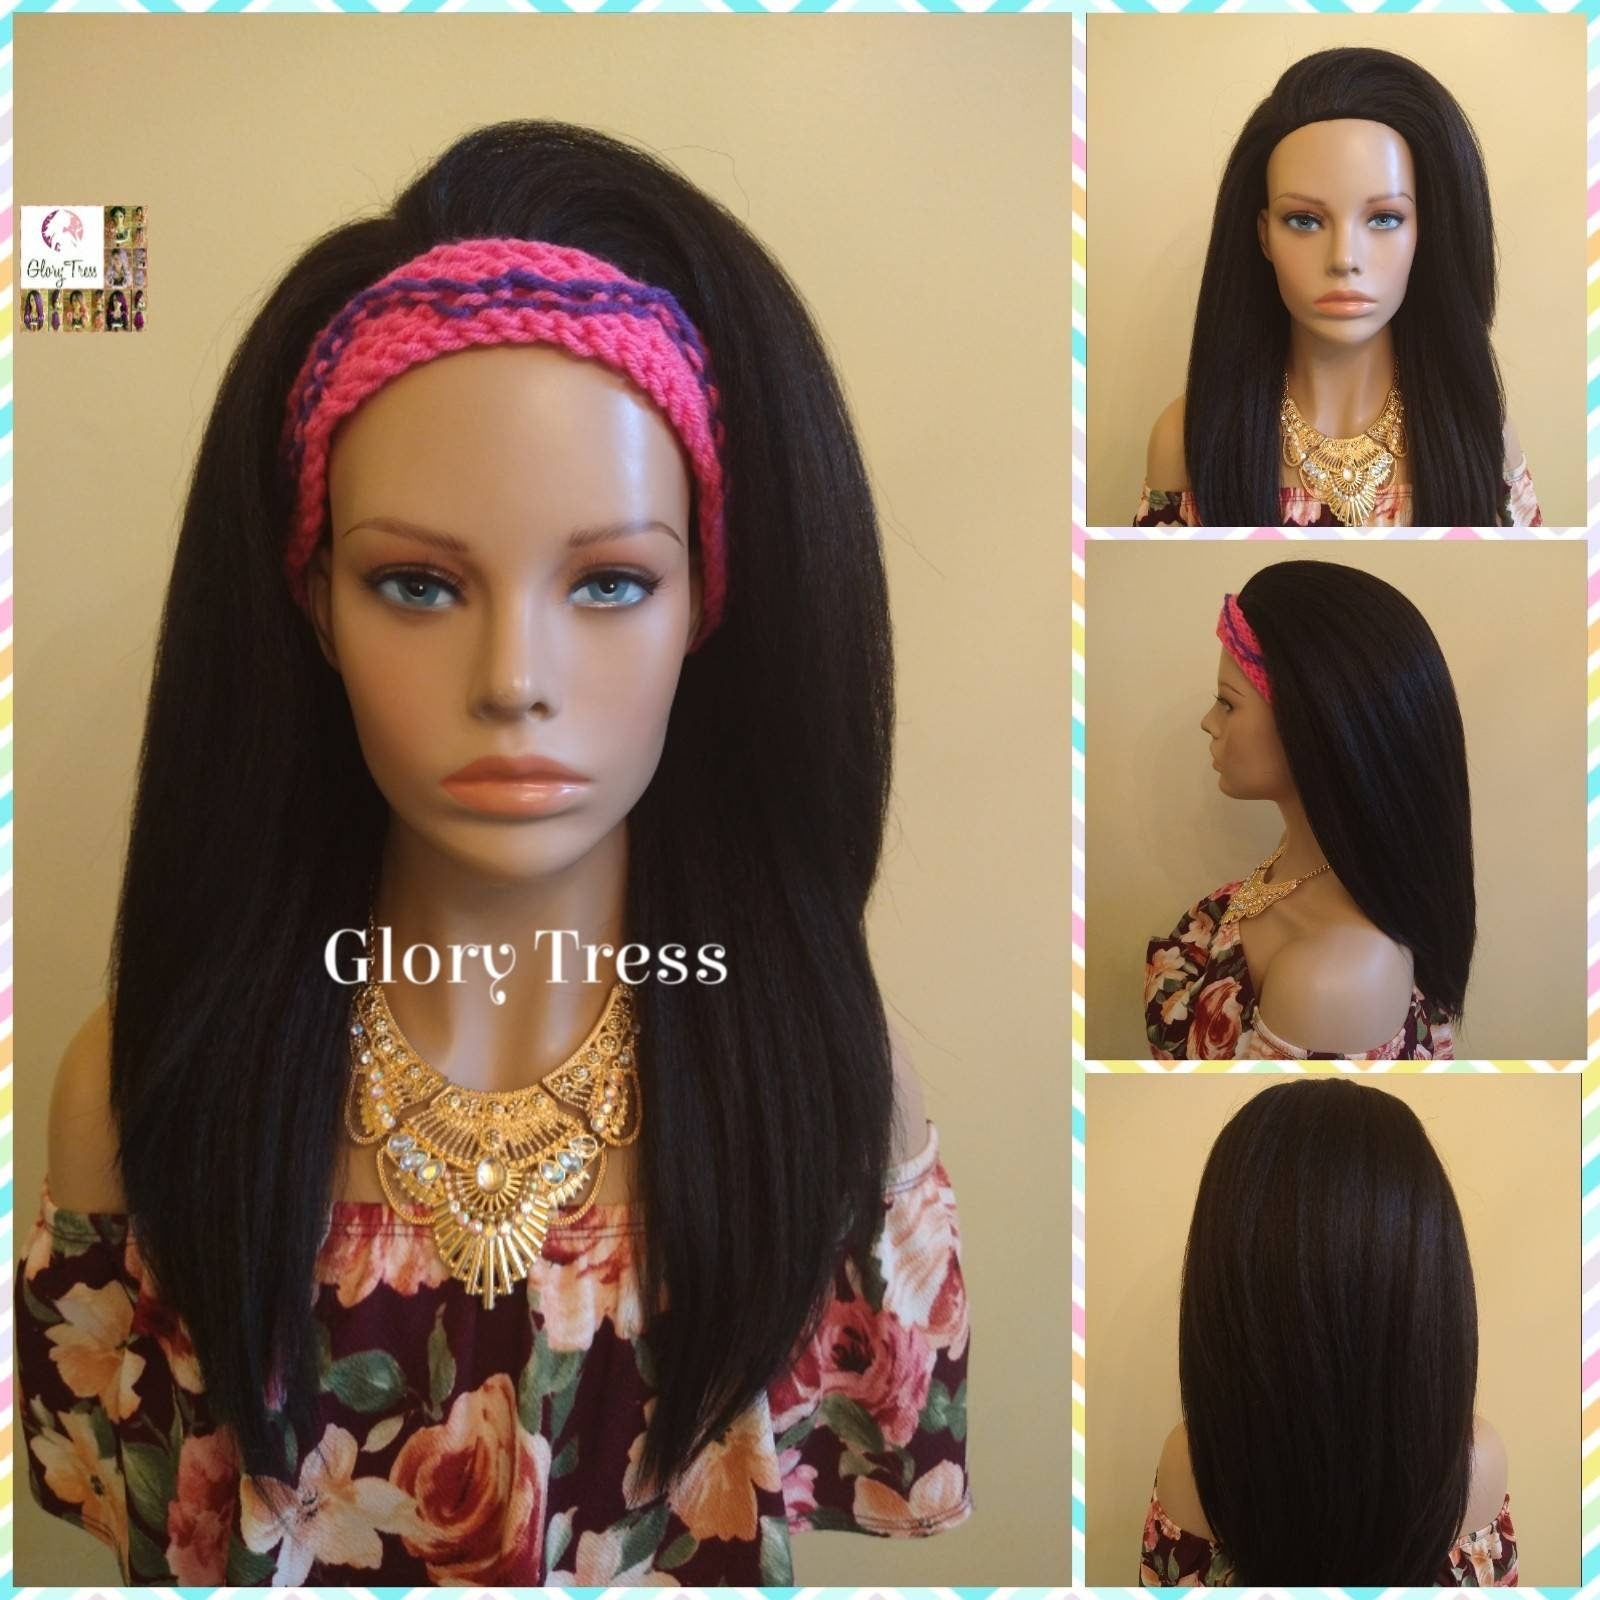 CLEARANCE // Crochet Headband - Pink & Purple Headband - Turbans - Handmade Turban - Handmade Crochet Headband - Glory Tress  // GLAMOROUS